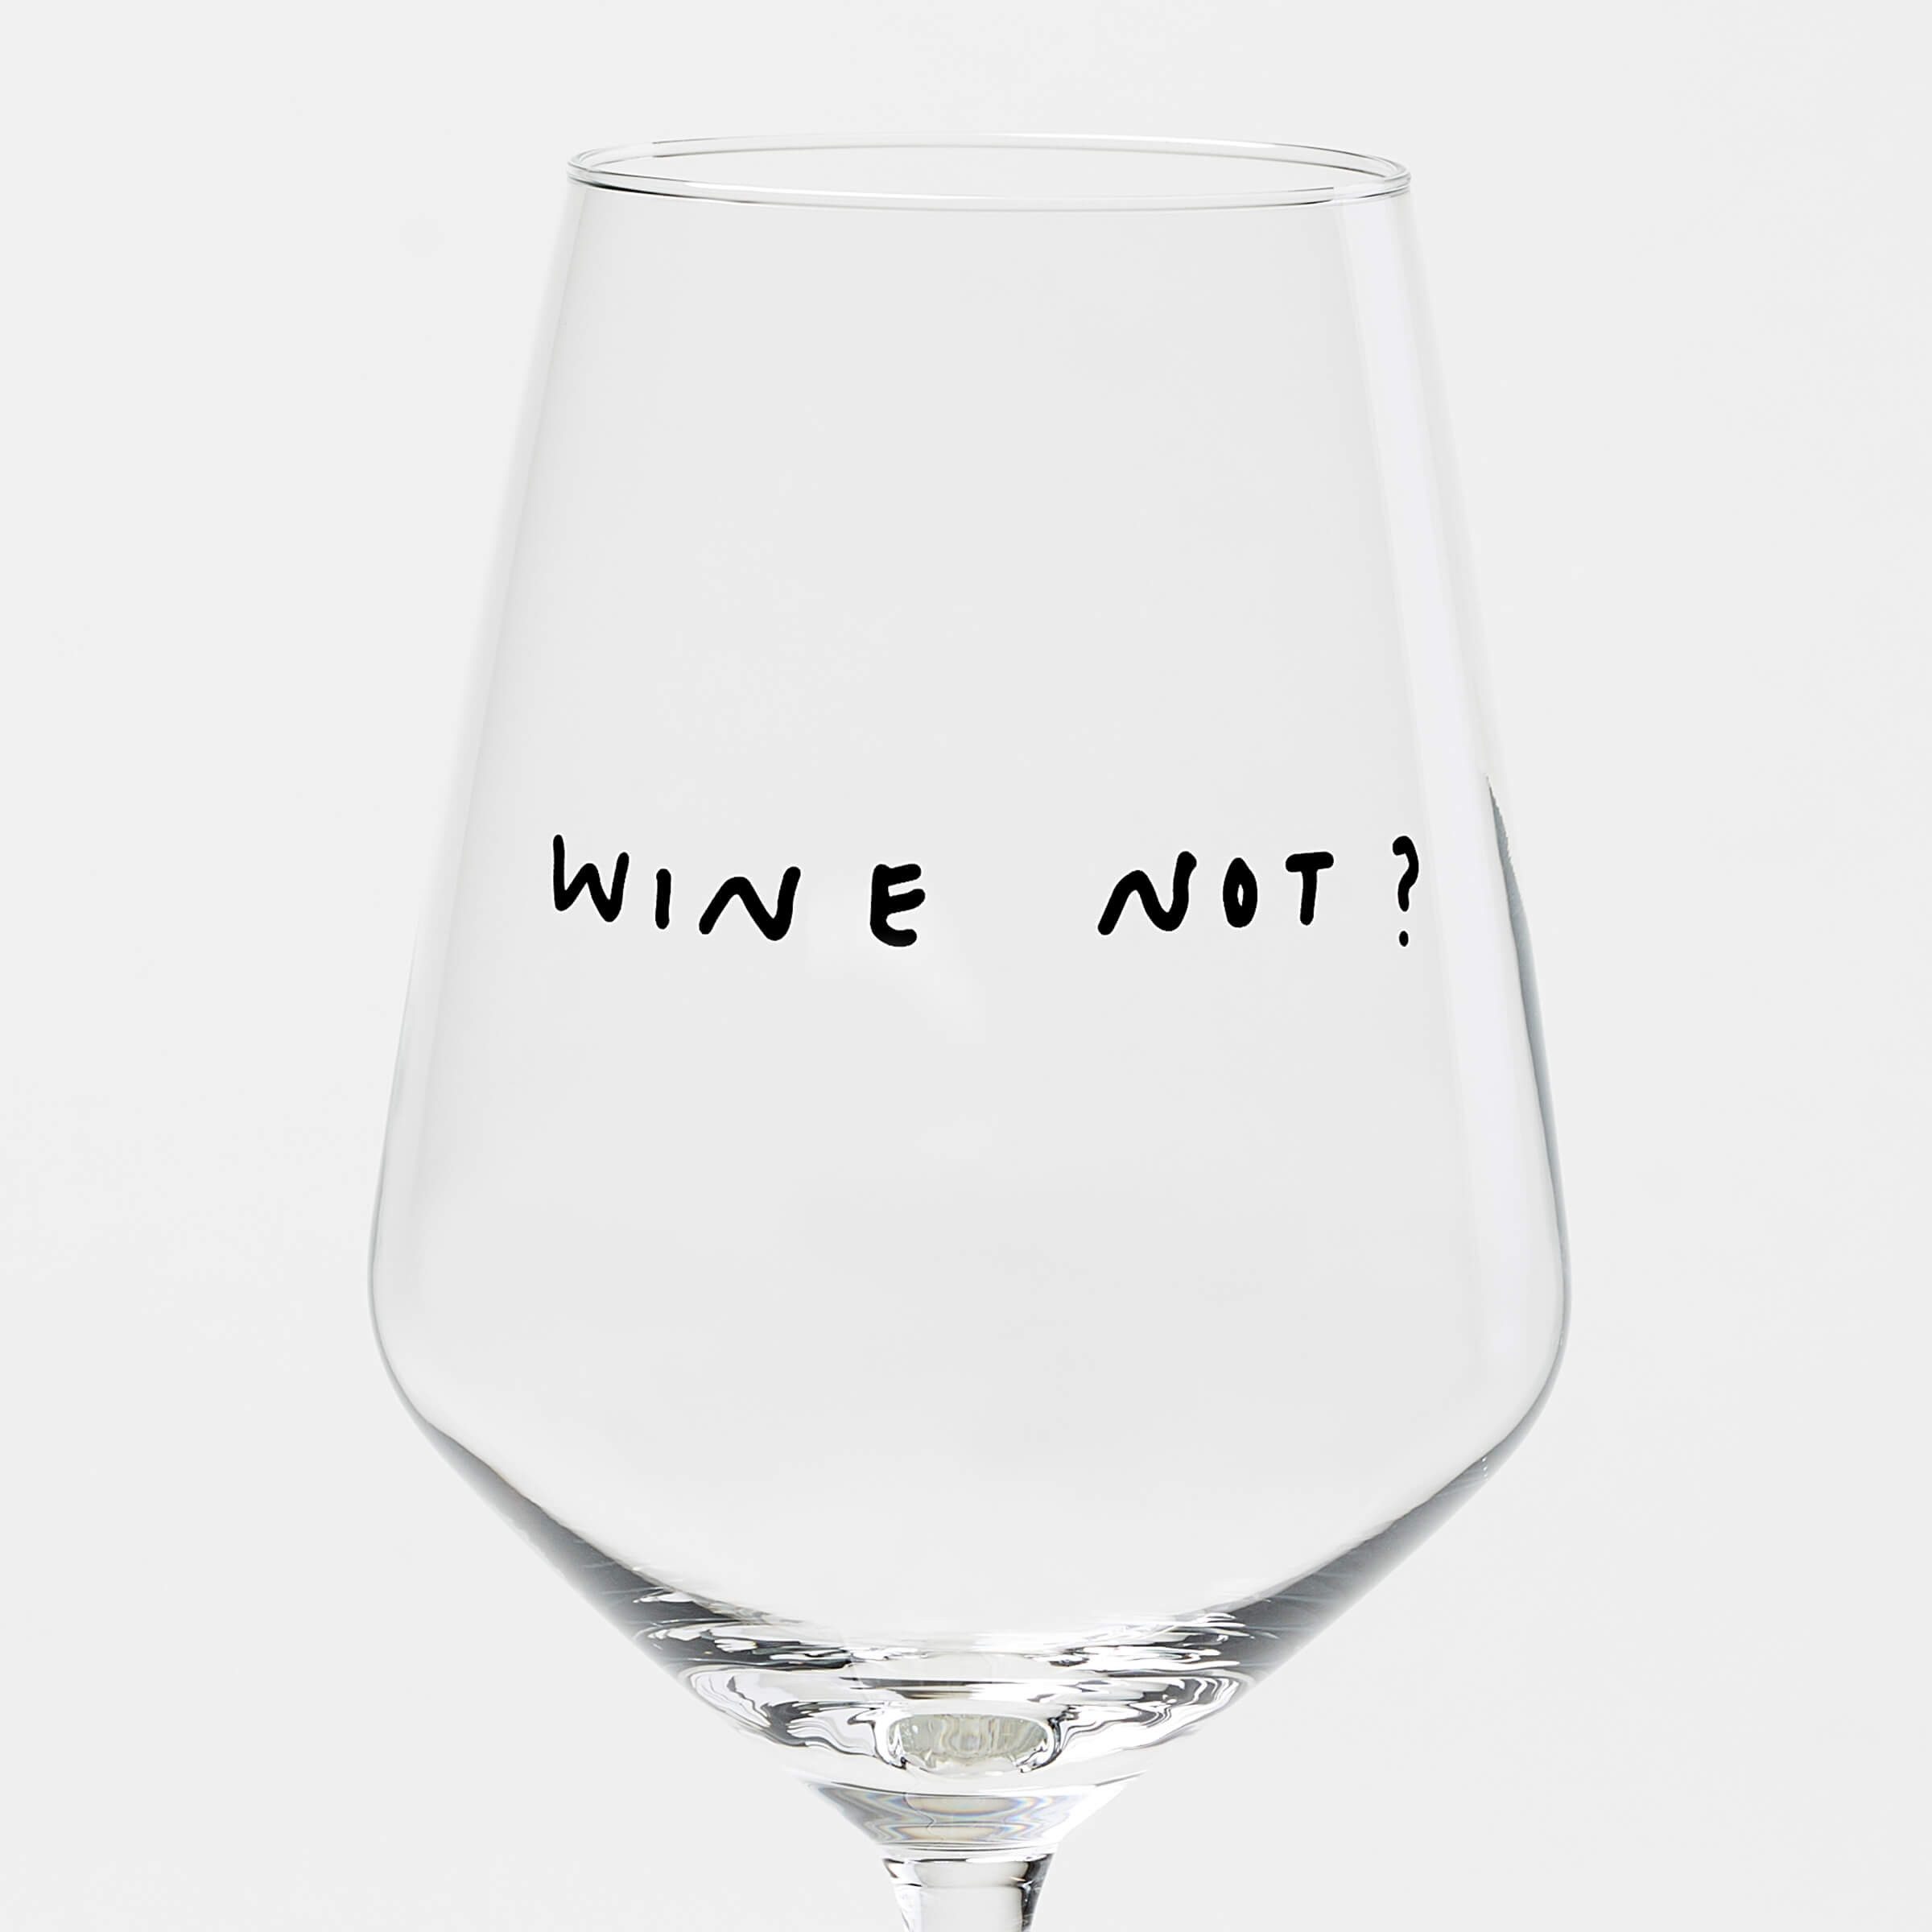 selekkt Weinglas "Wine Not" Weinglas by Johanna Schwarzer × selekkt, Glas